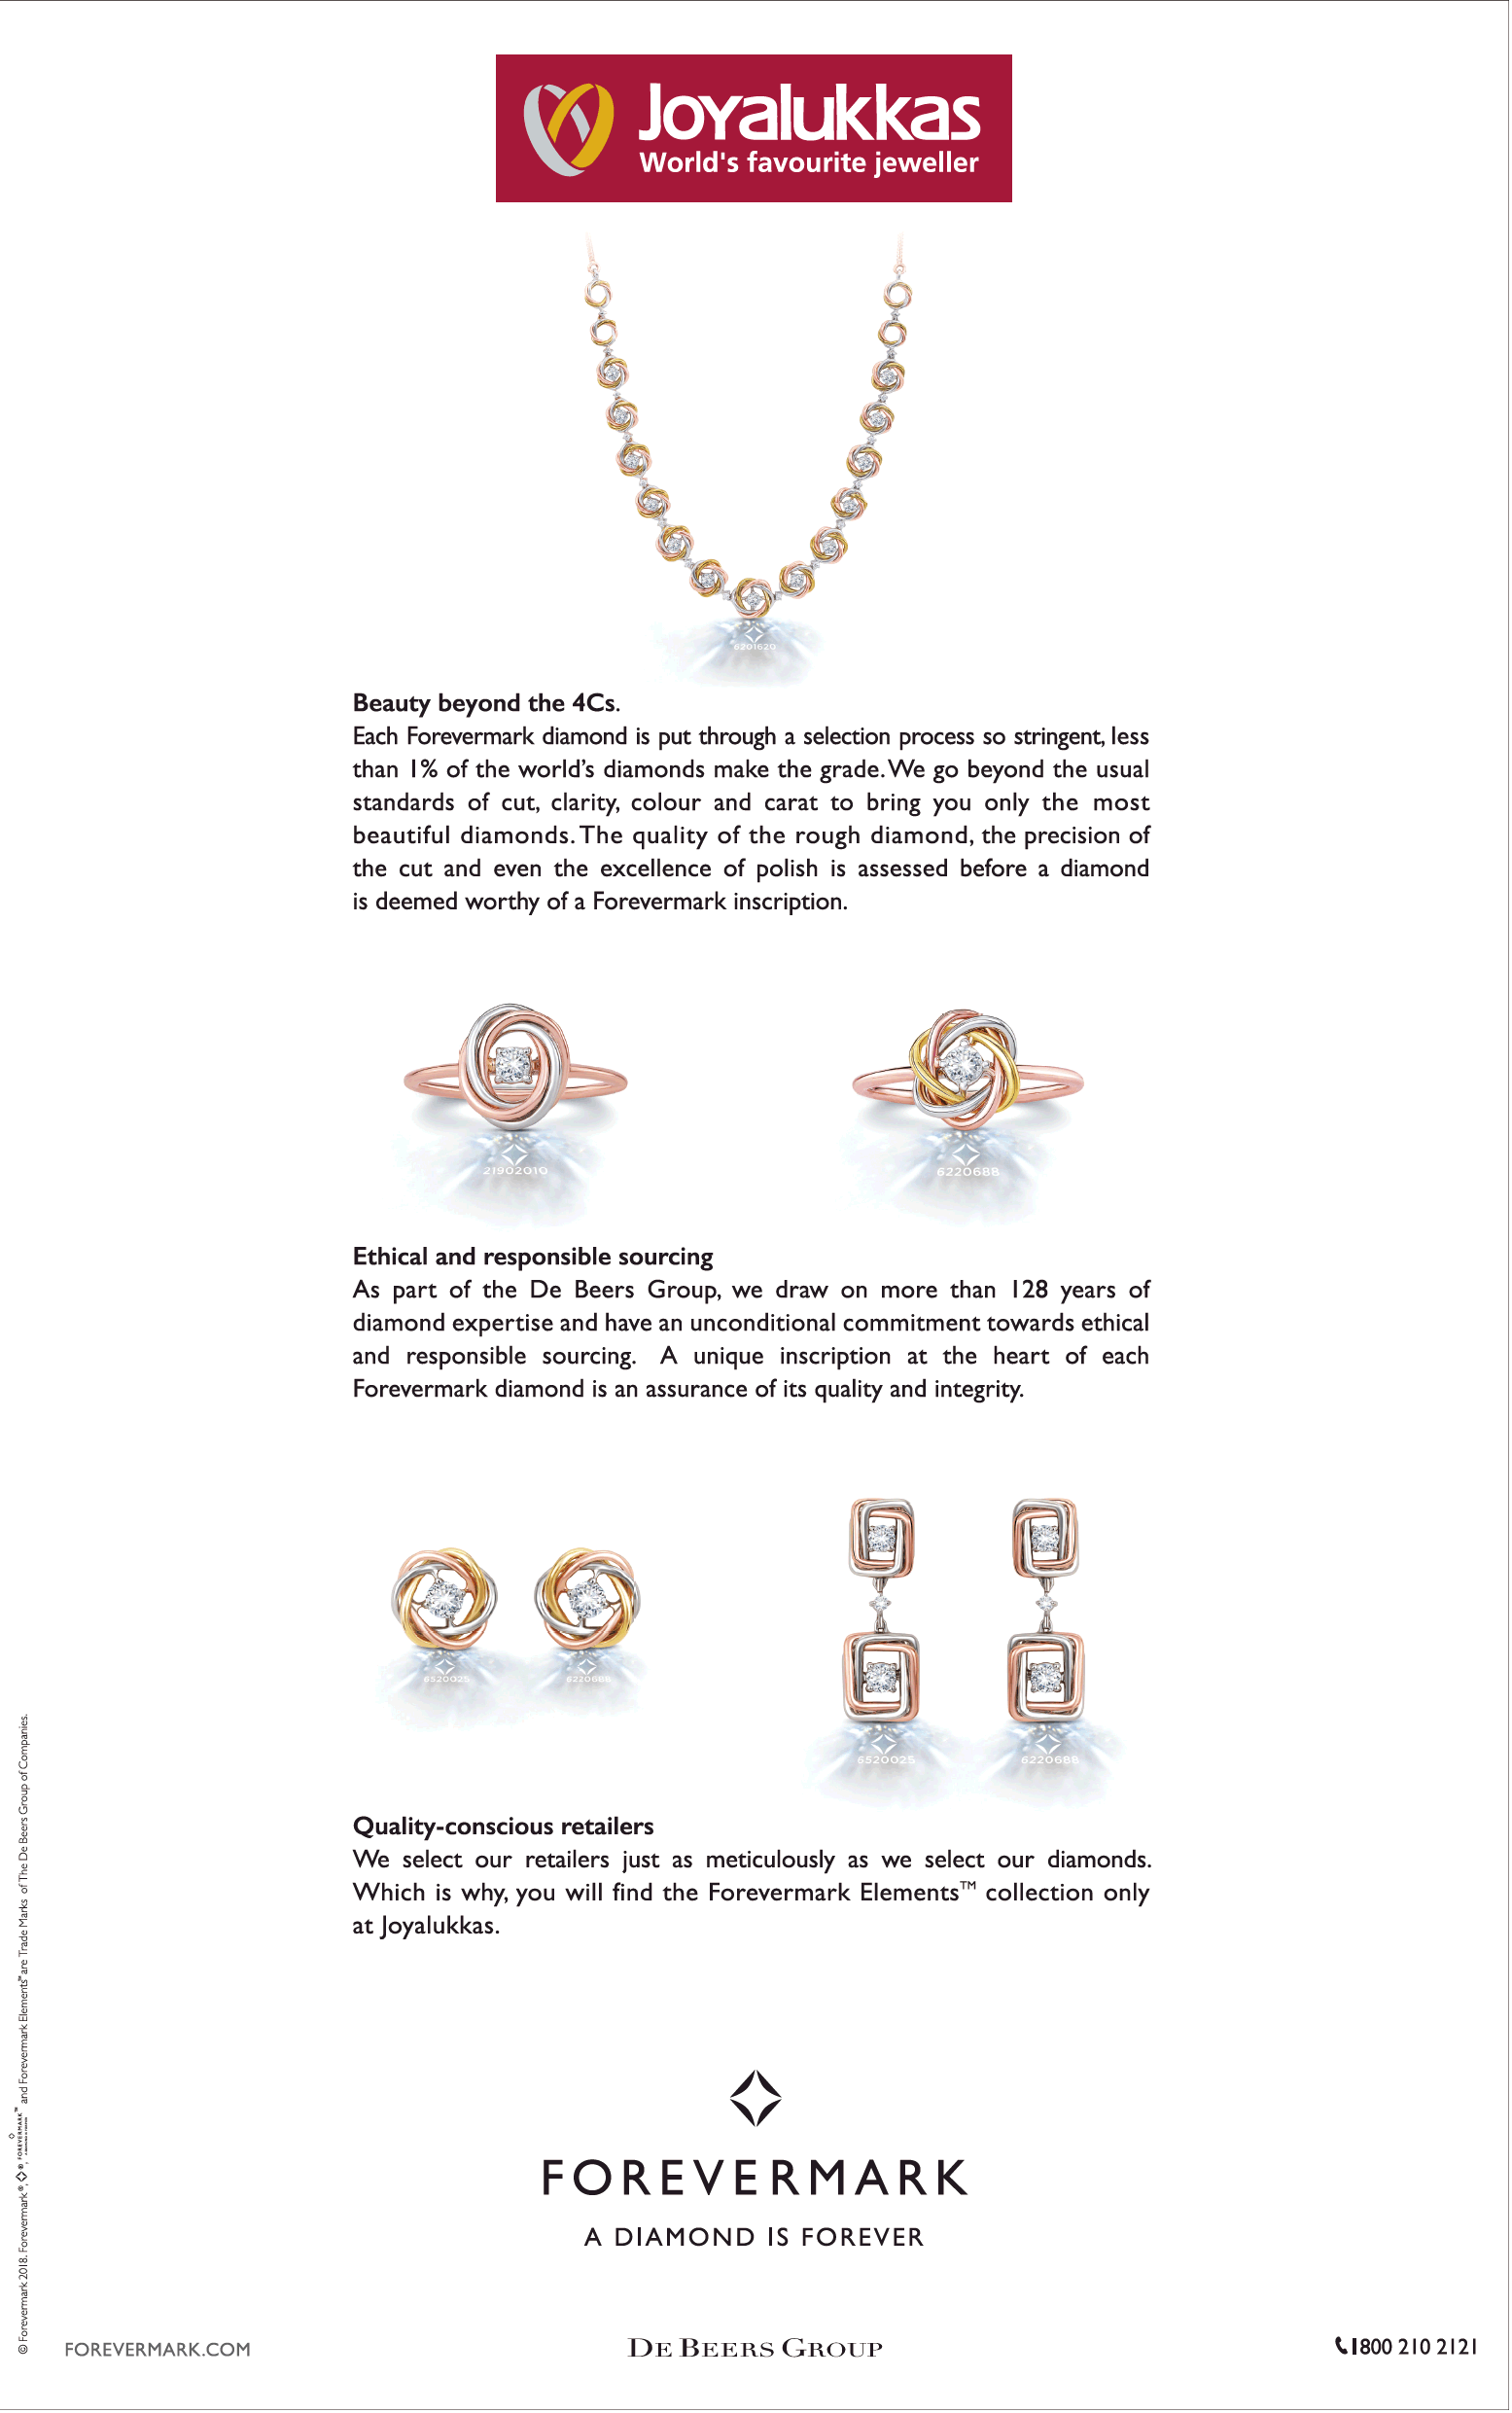 joyalukkas-forevermark-a-diamond-is-forever-ad-delhi-times-21-12-2018.png